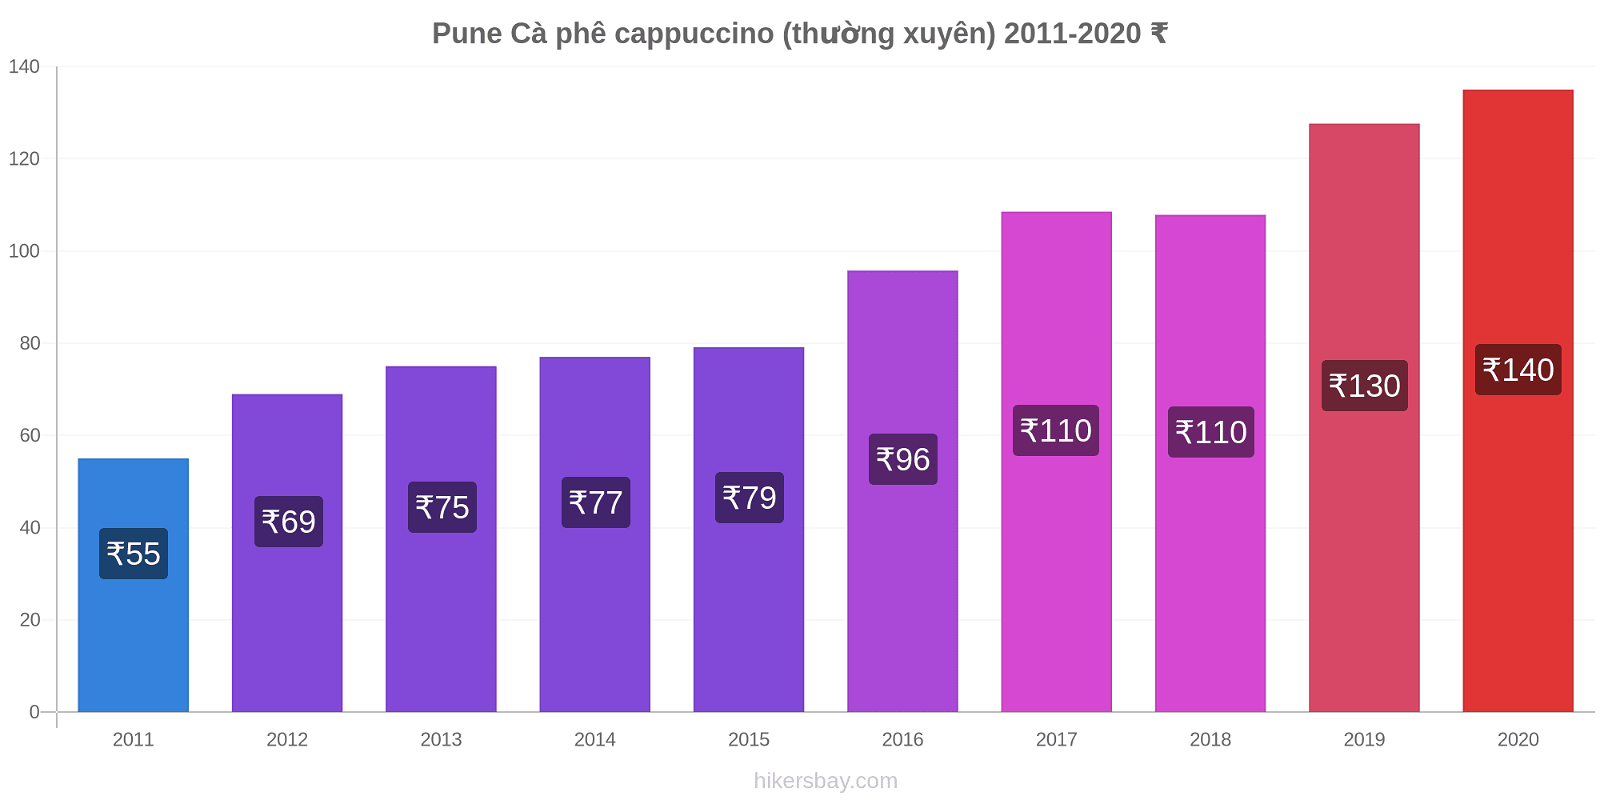 Pune thay đổi giá Cà phê cappuccino (thường xuyên) hikersbay.com